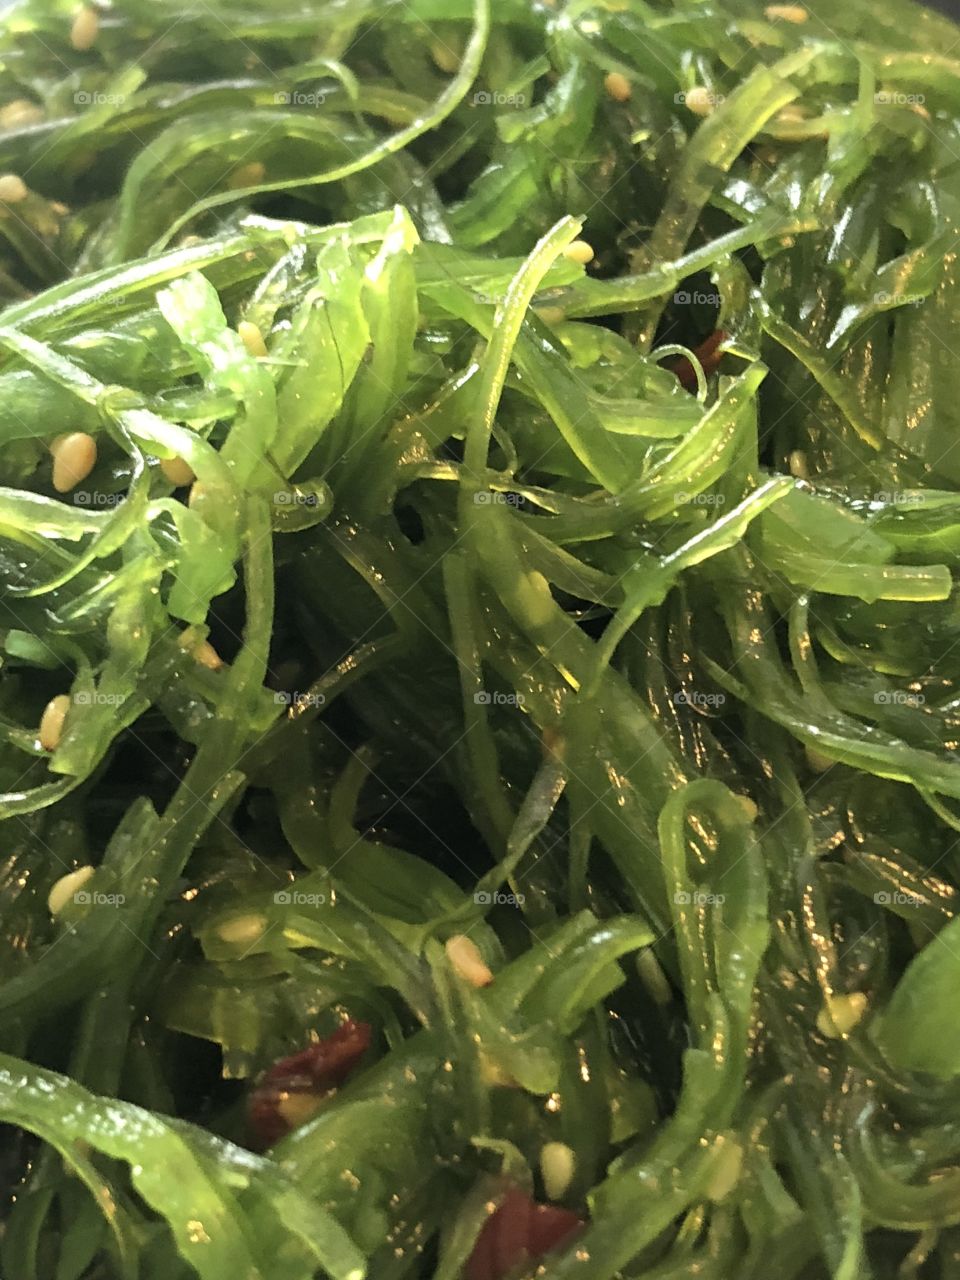 Seaweed Salad up close  bright green colors 